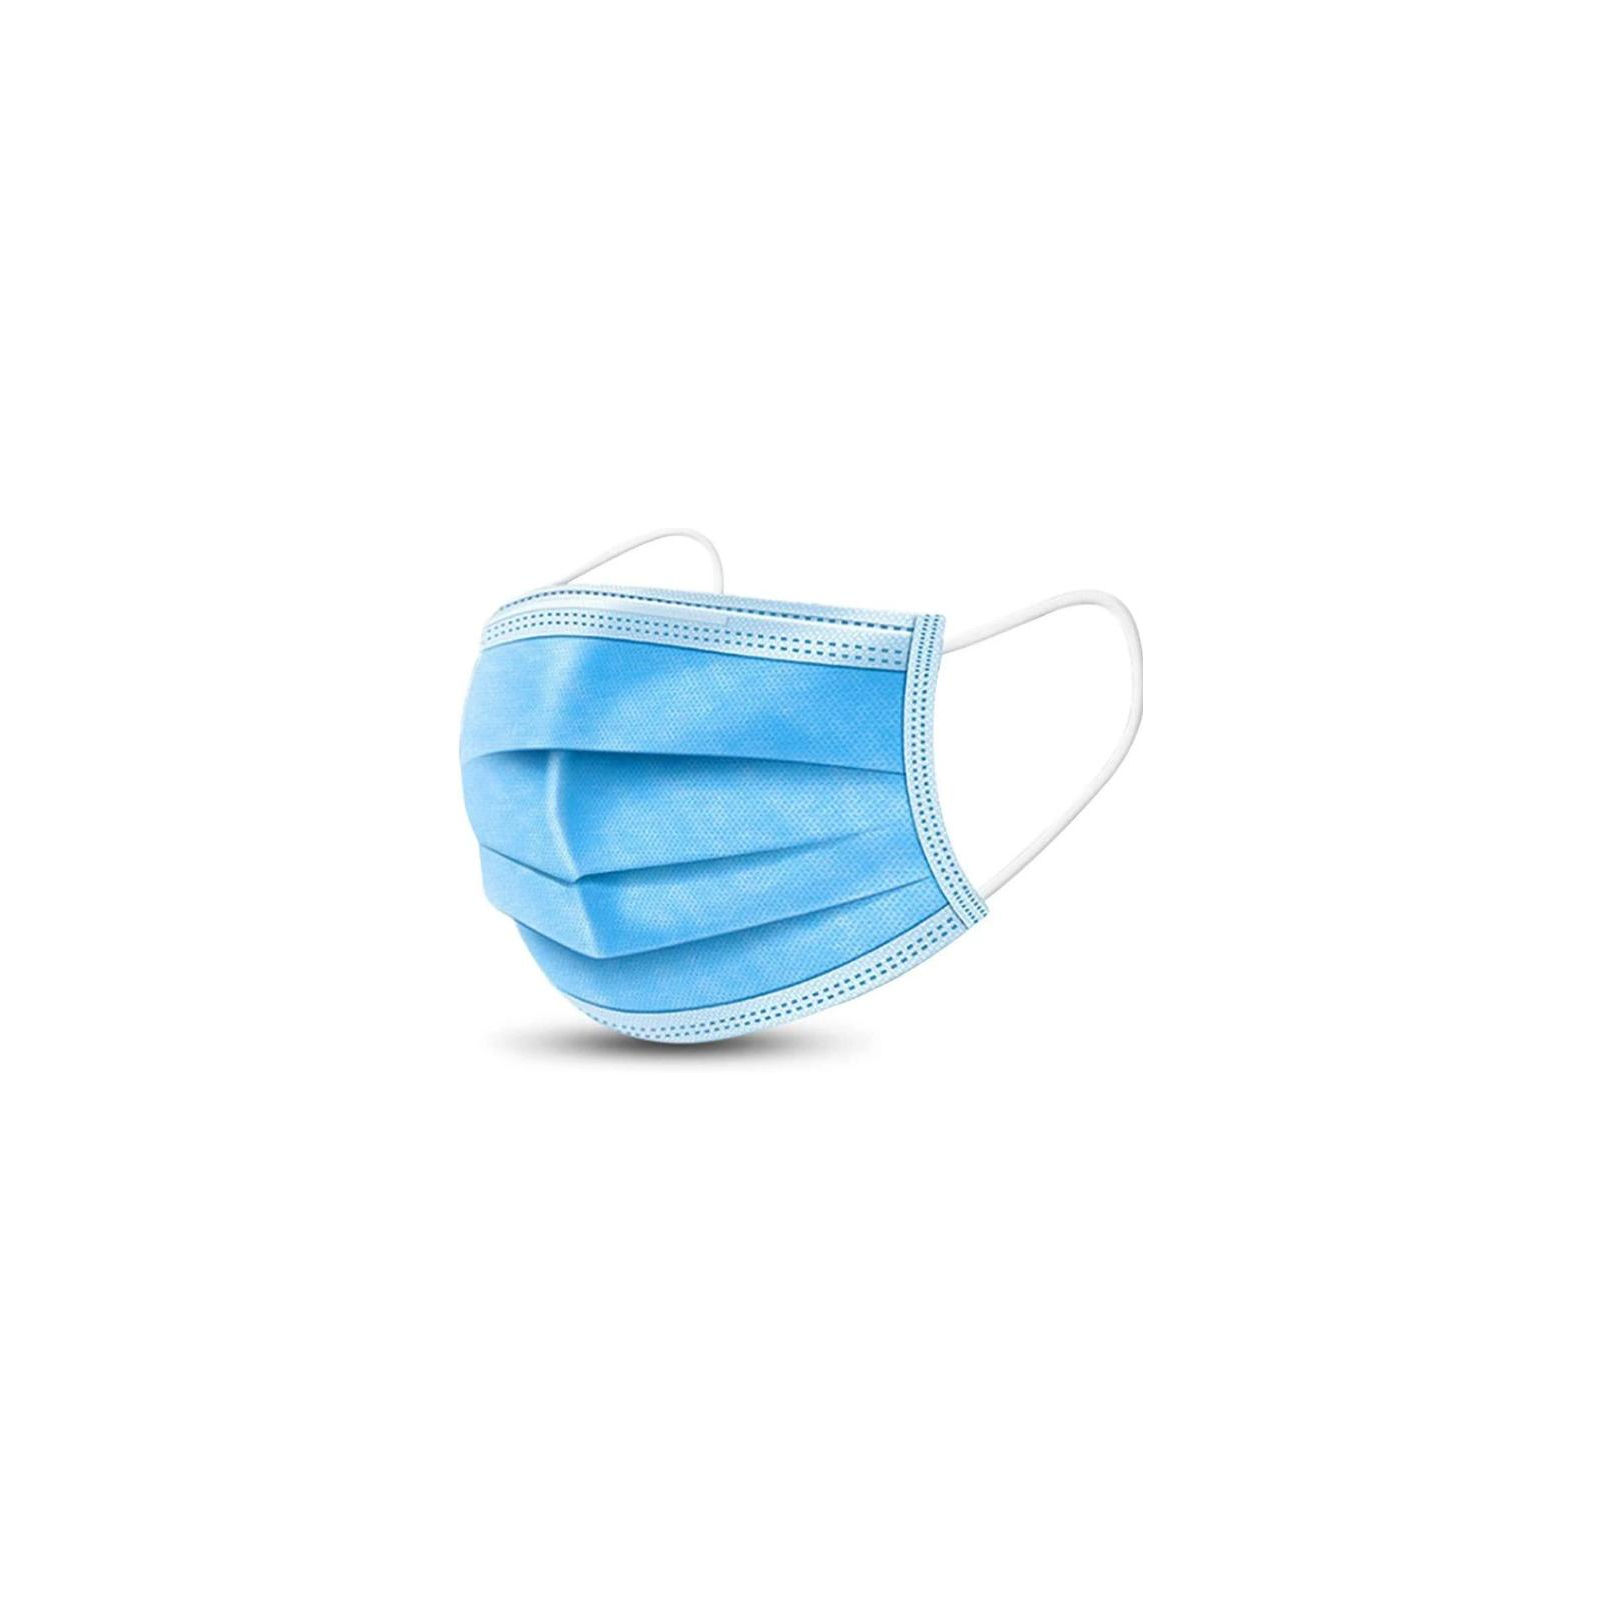 Защитная маска для лица НЗМ медична н/стерильна 3-шарова 50